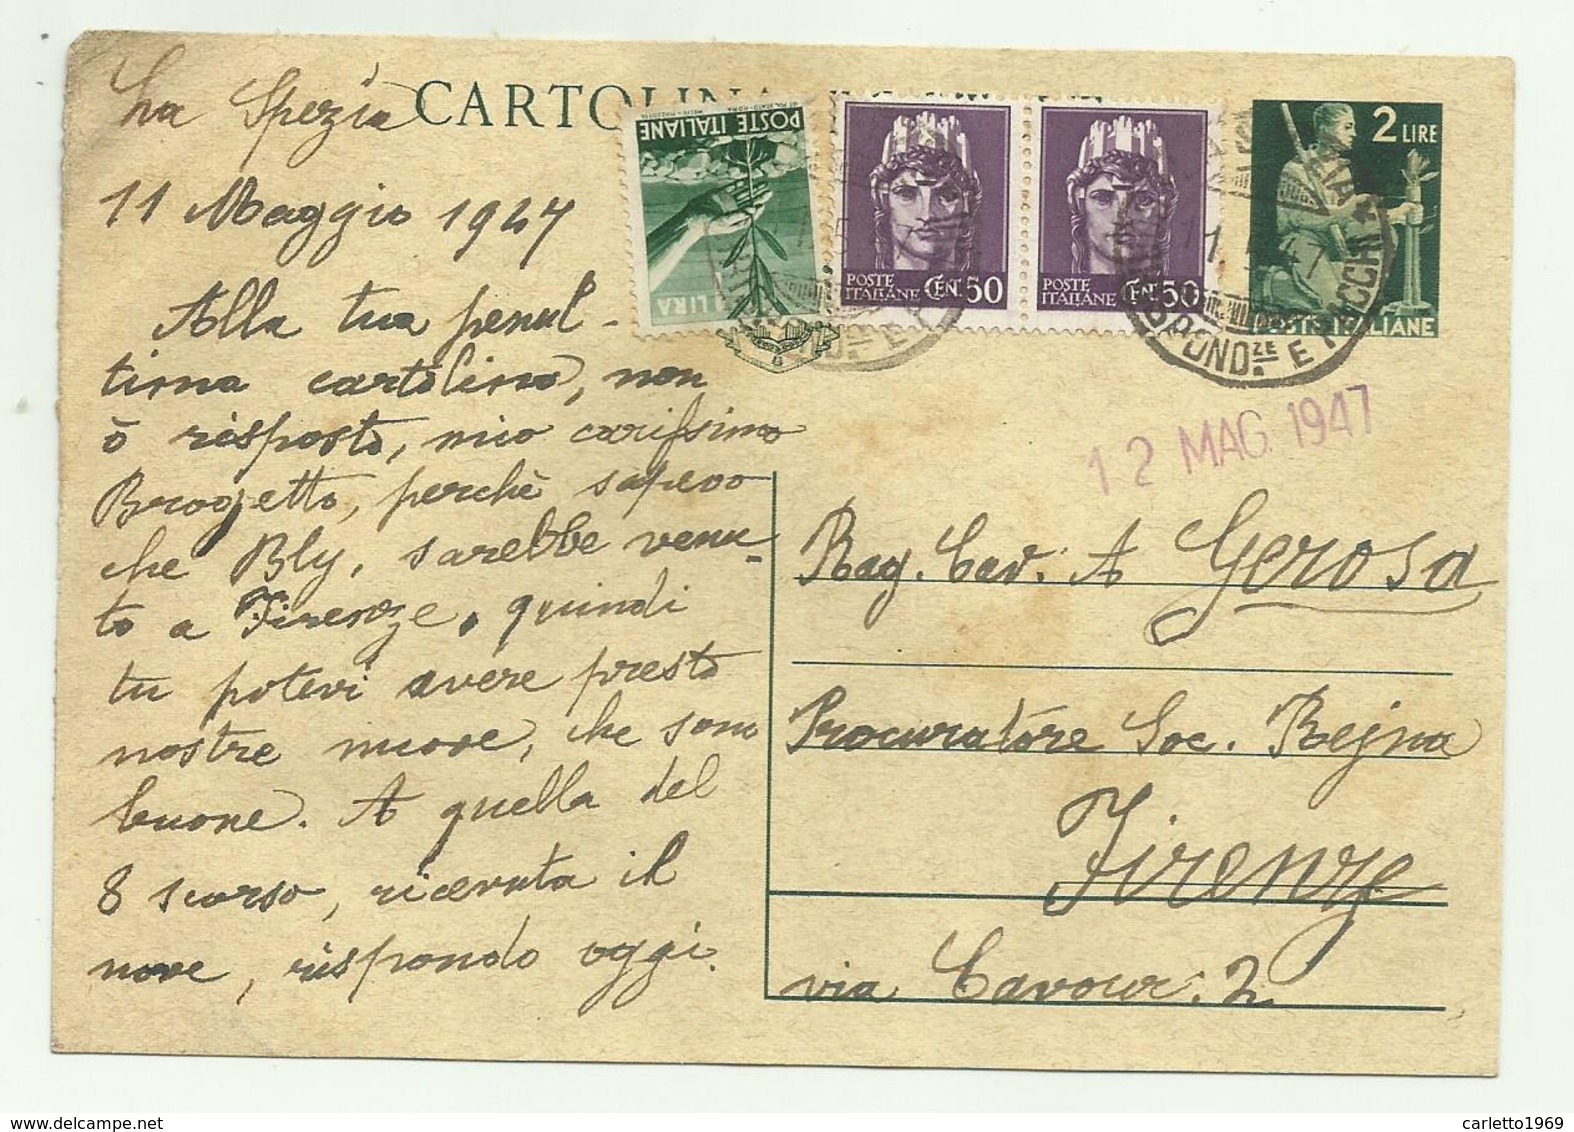 CARTOLINA POSTALE LIRE 2  CON AGGIUNTA DI 1 LIRA E 2 DA CENT. 50 - 1947  FG - Marcofilie